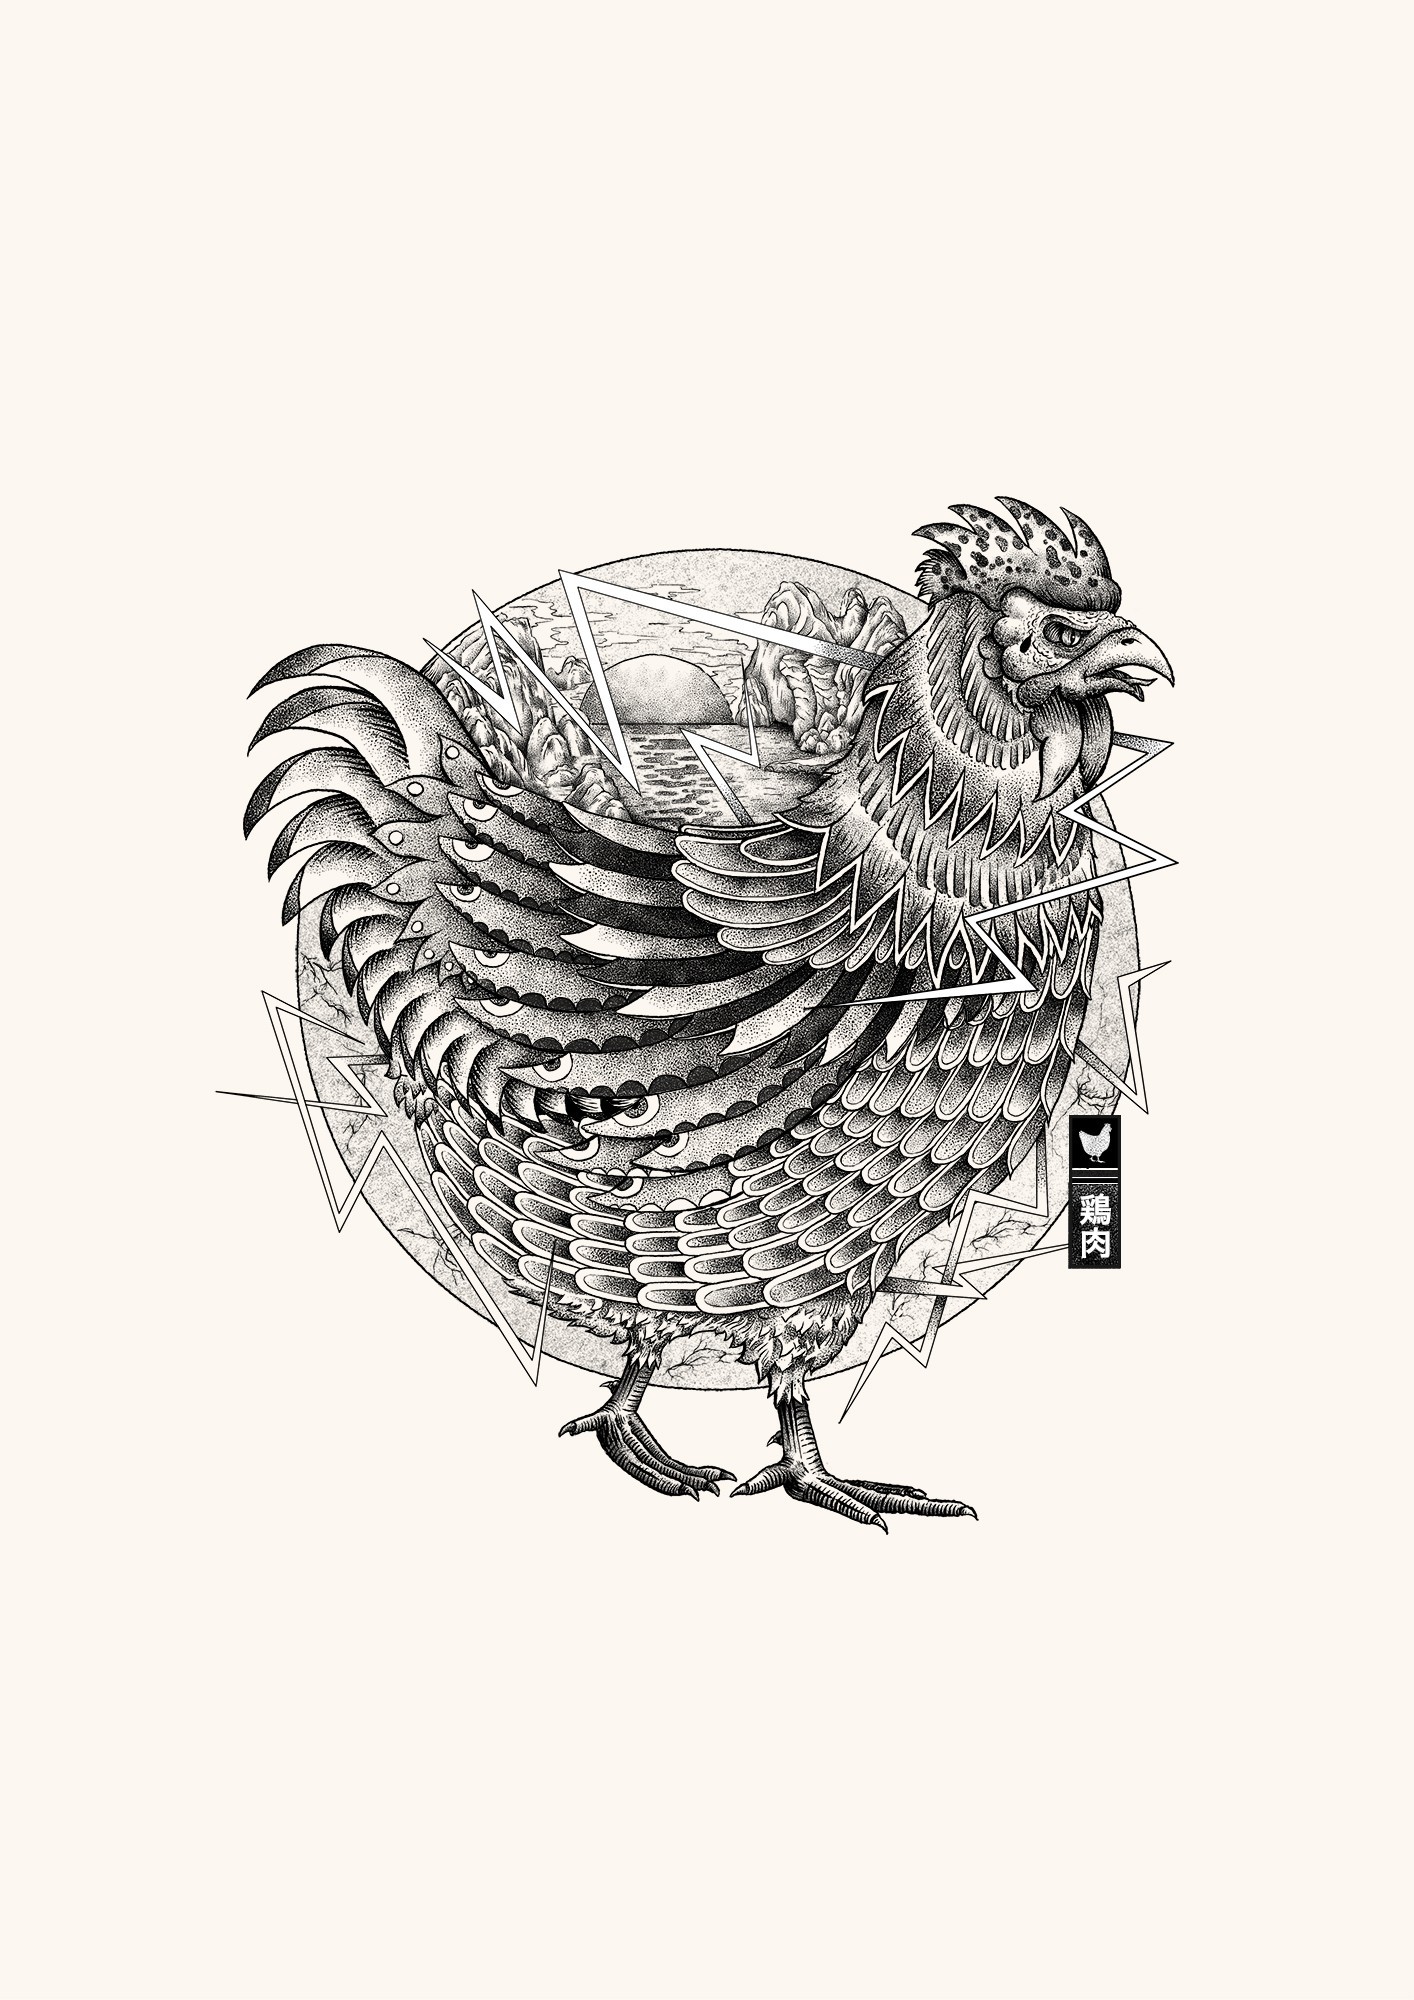 KFC_CHICKEN_illustration-2-1